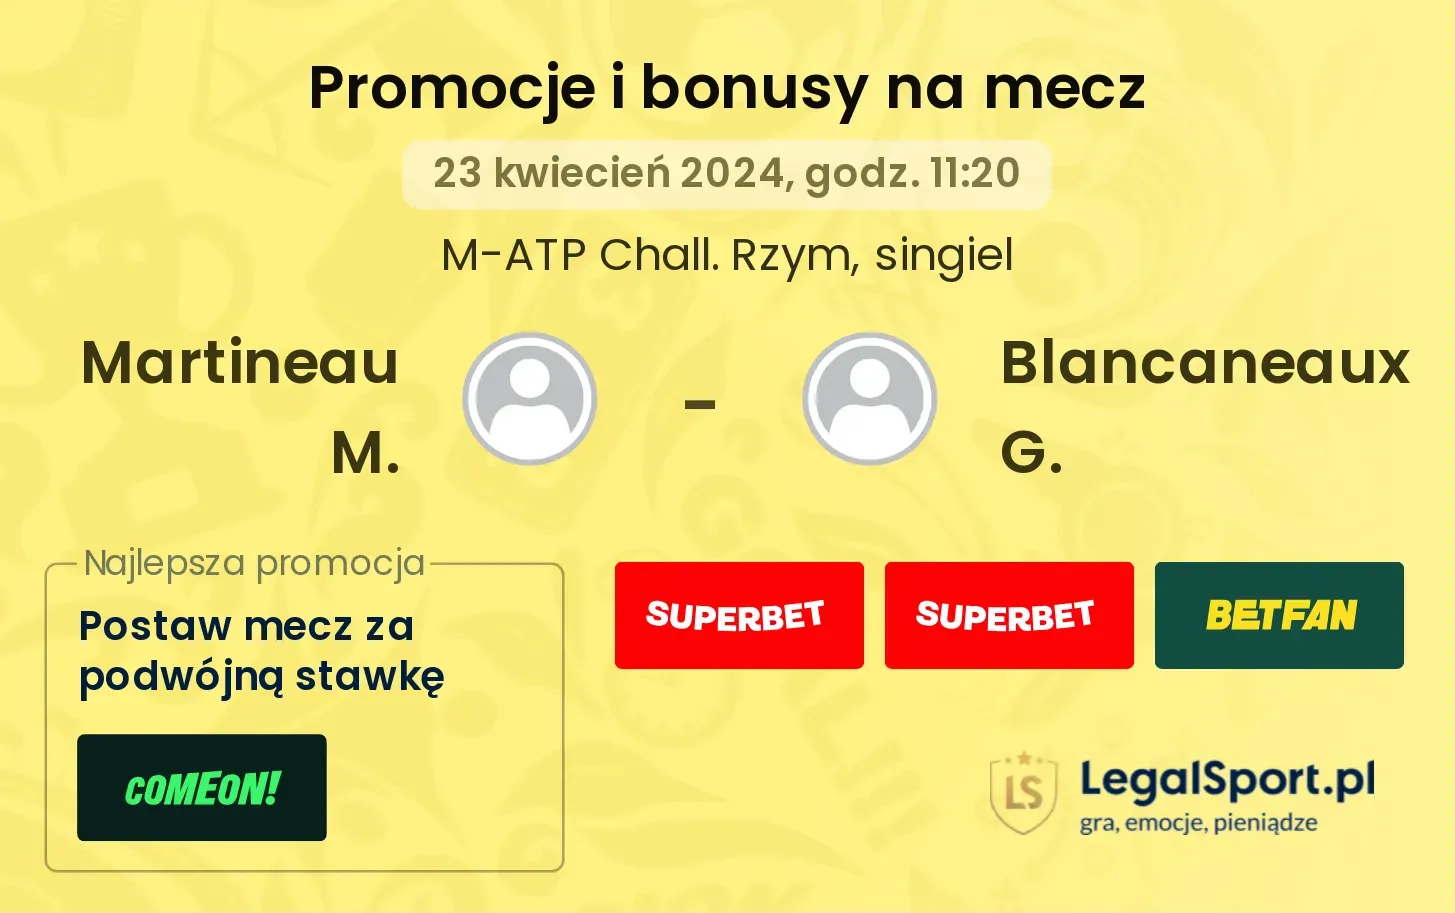 Martineau M. - Blancaneaux G. promocje bonusy na mecz